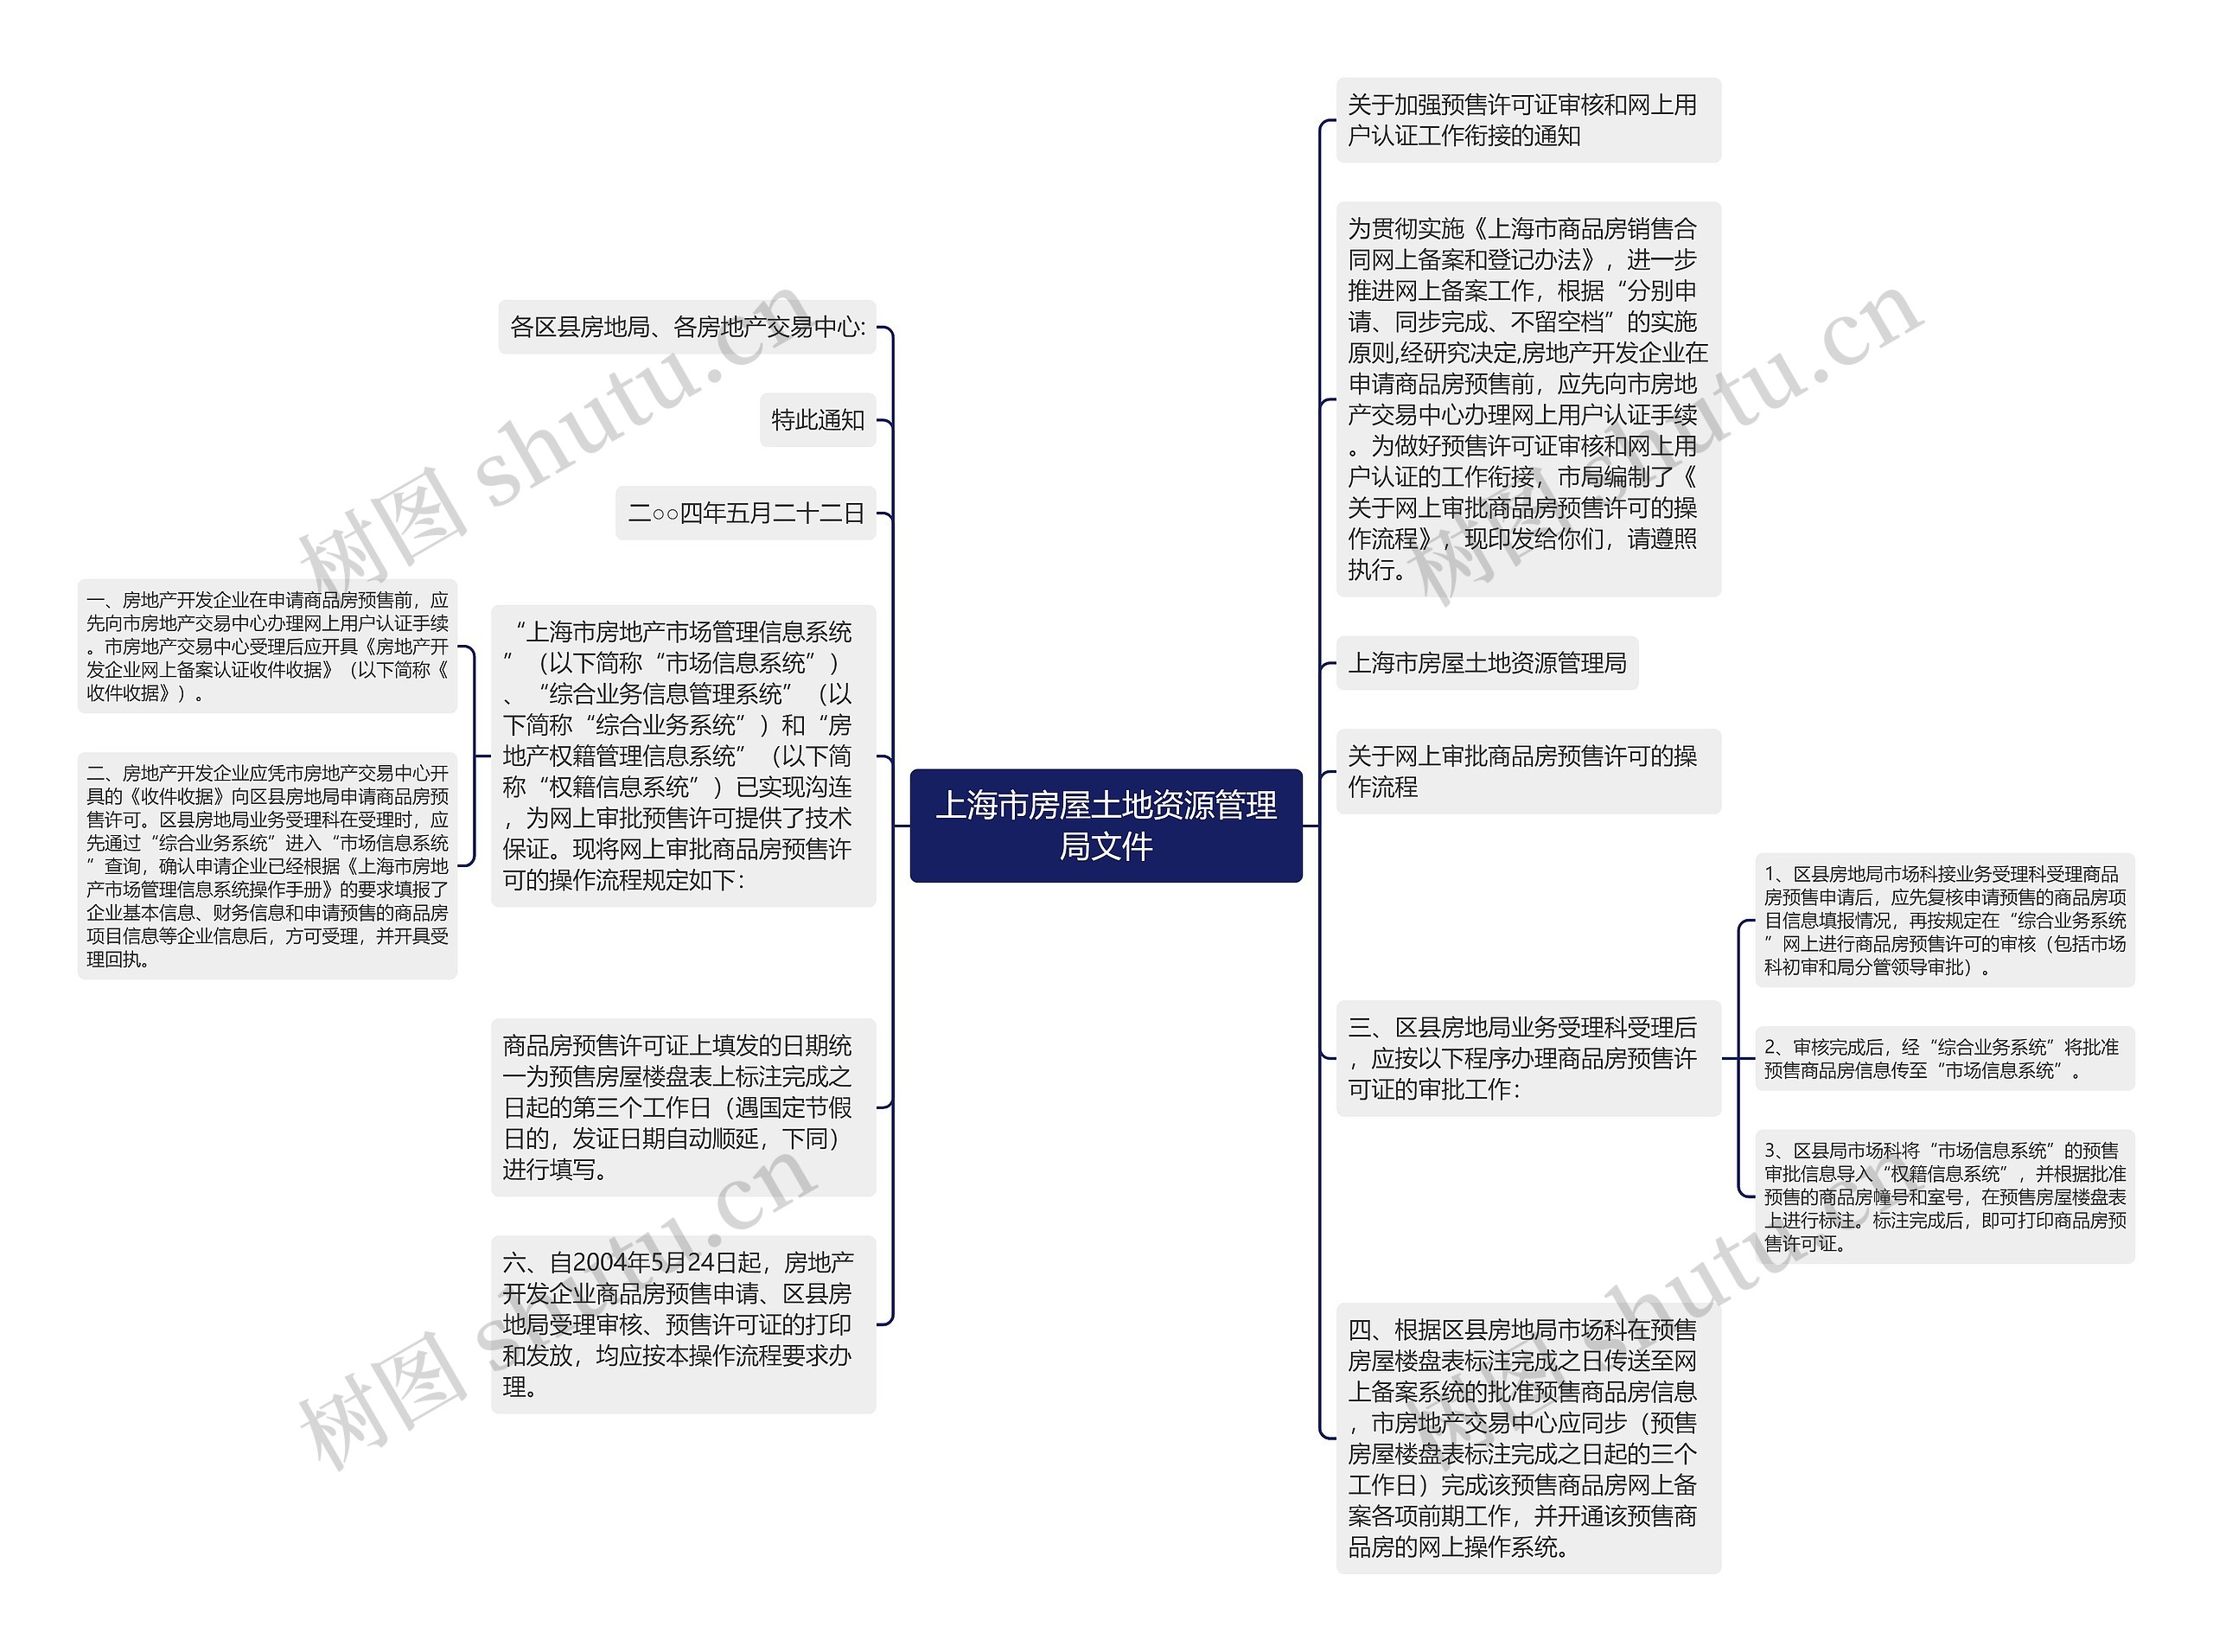 上海市房屋土地资源管理局文件思维导图